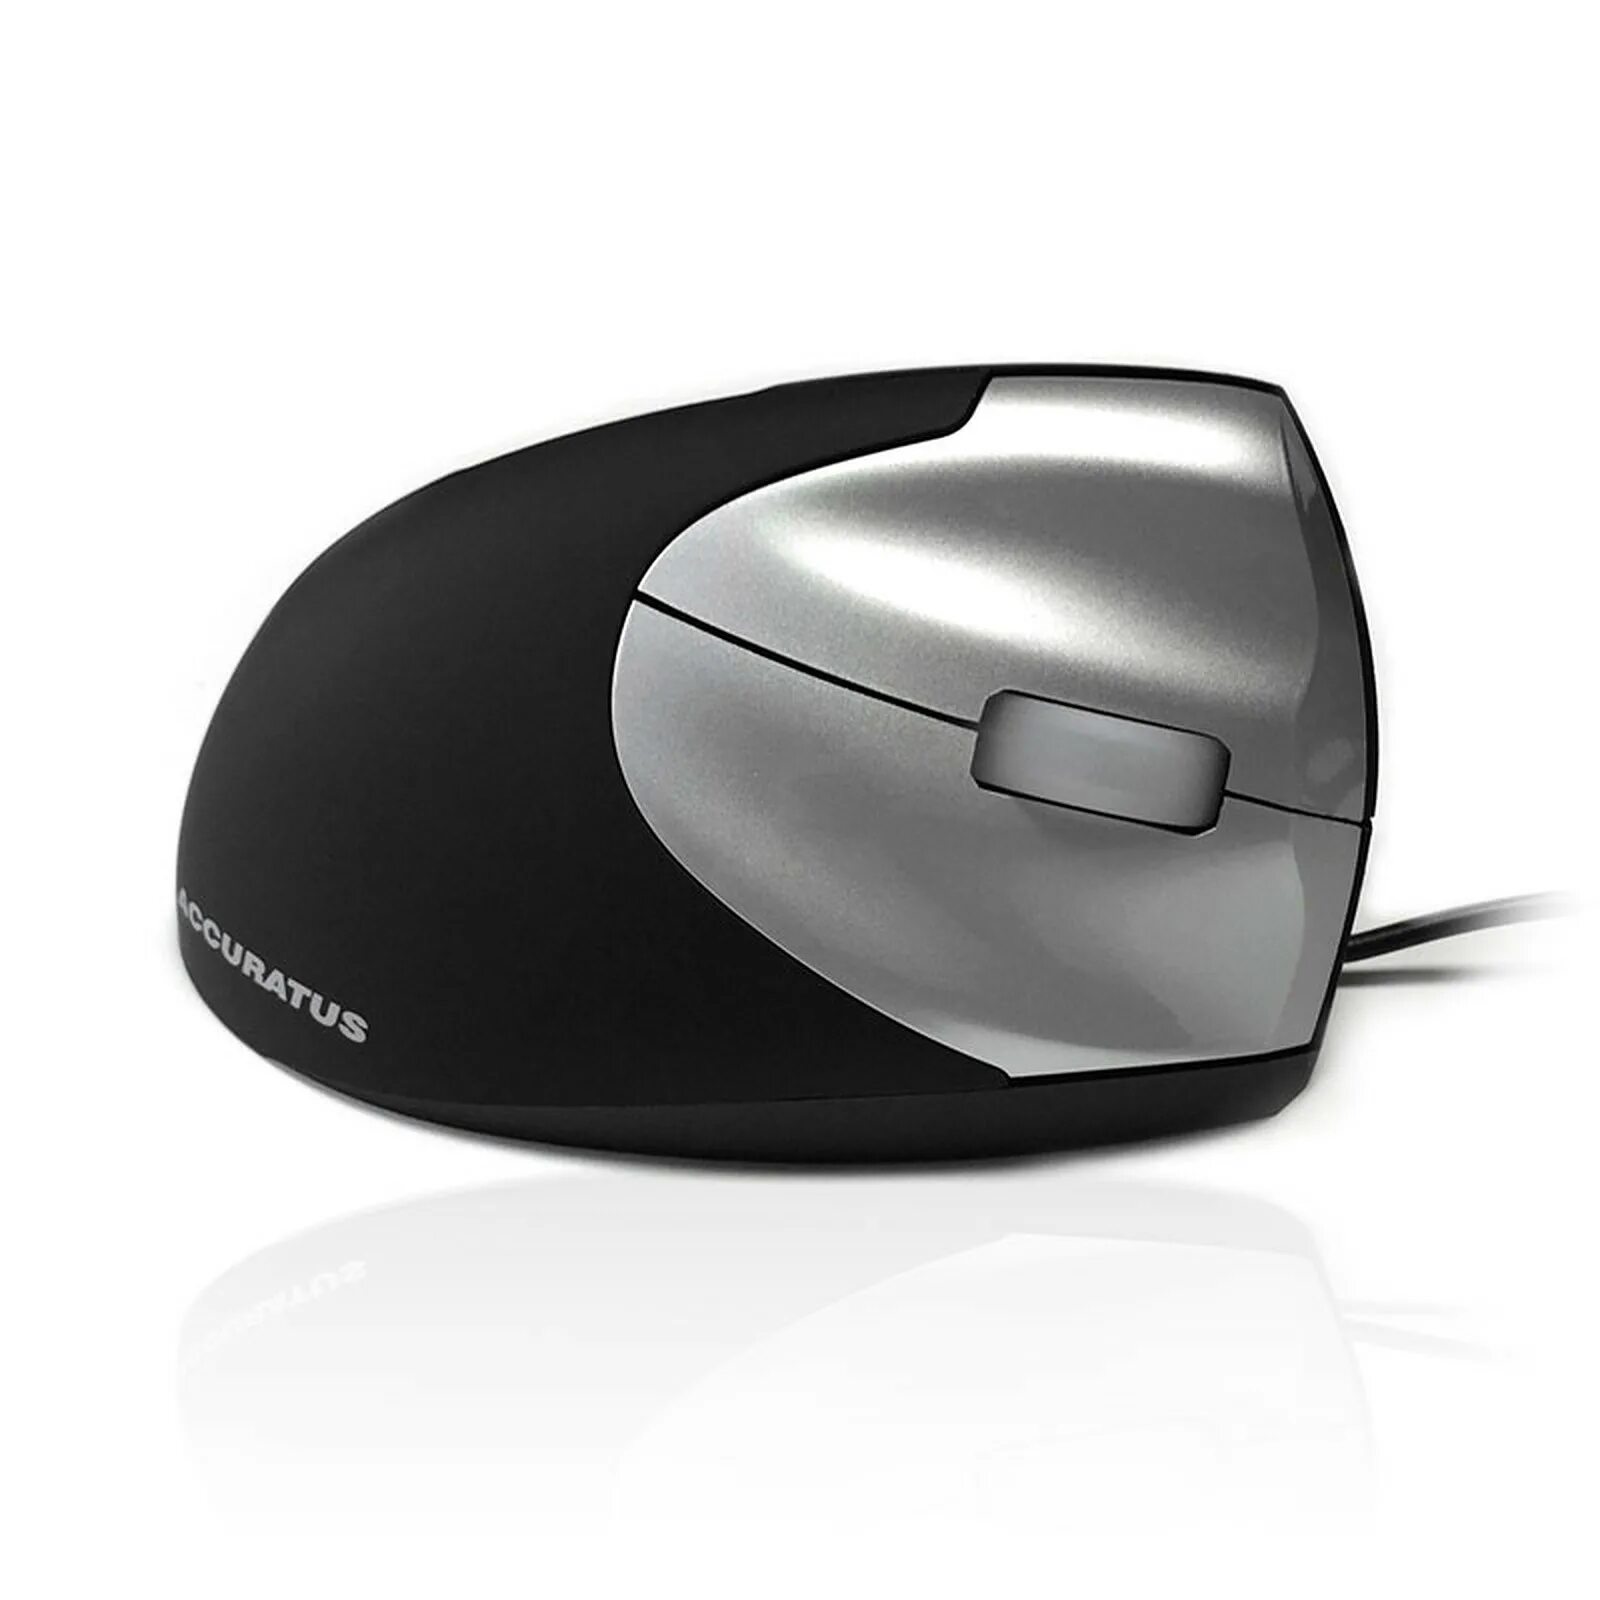 G2 mouse. Adisson оптическая мышь. Wired Mouse 2e. BT5.2 Mouse вертикально. G-Tech 3d Optical Mouse.